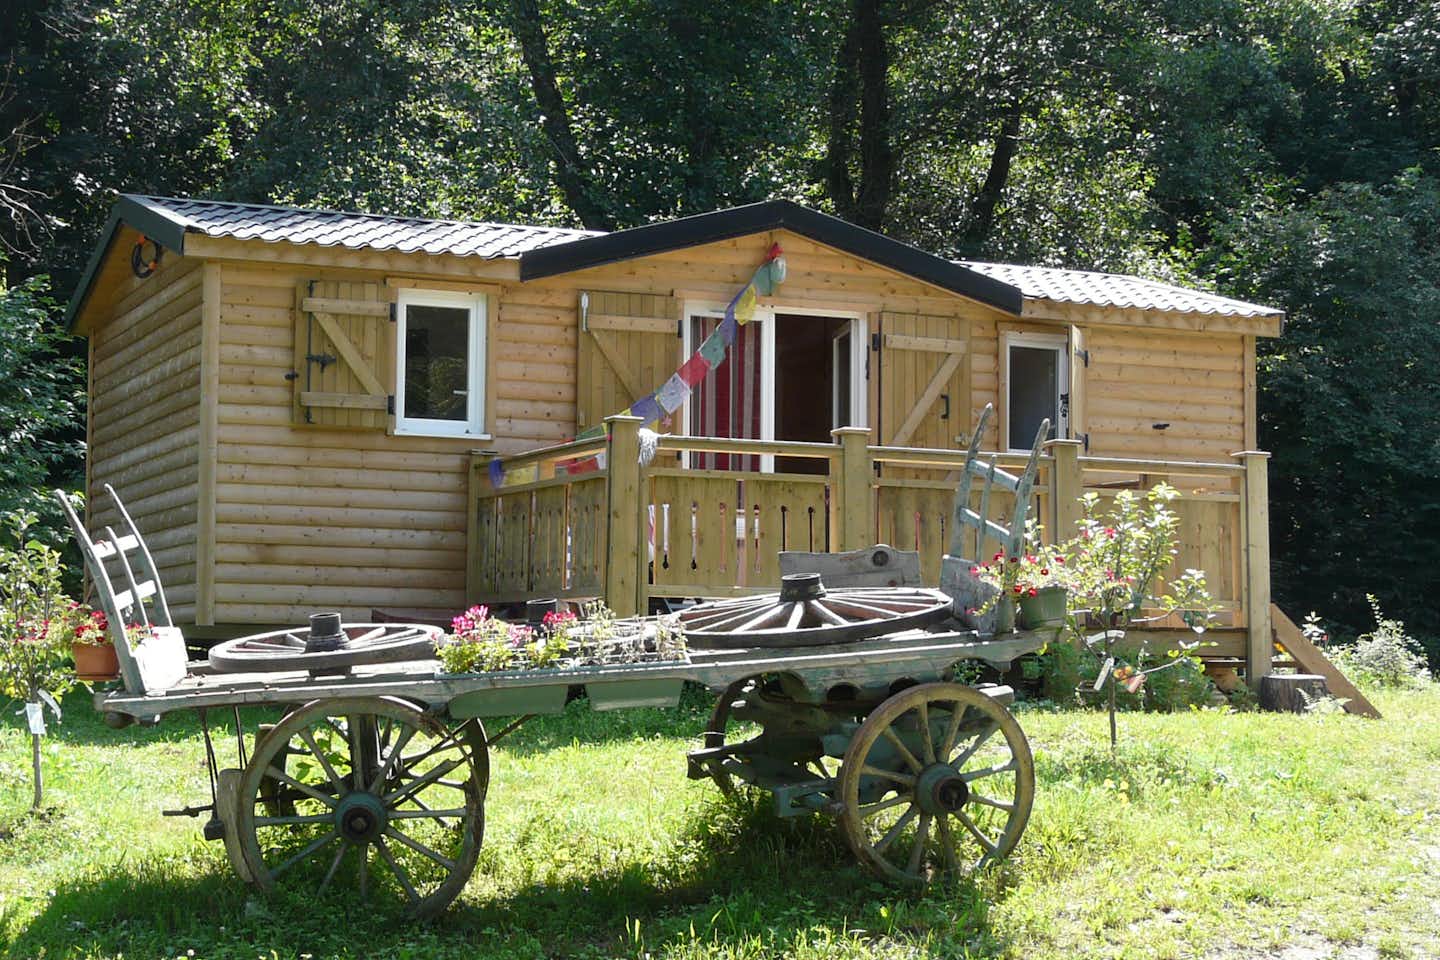 Camping Ser Sirant - Mobilheim mit Veranda und Zierwagen davor